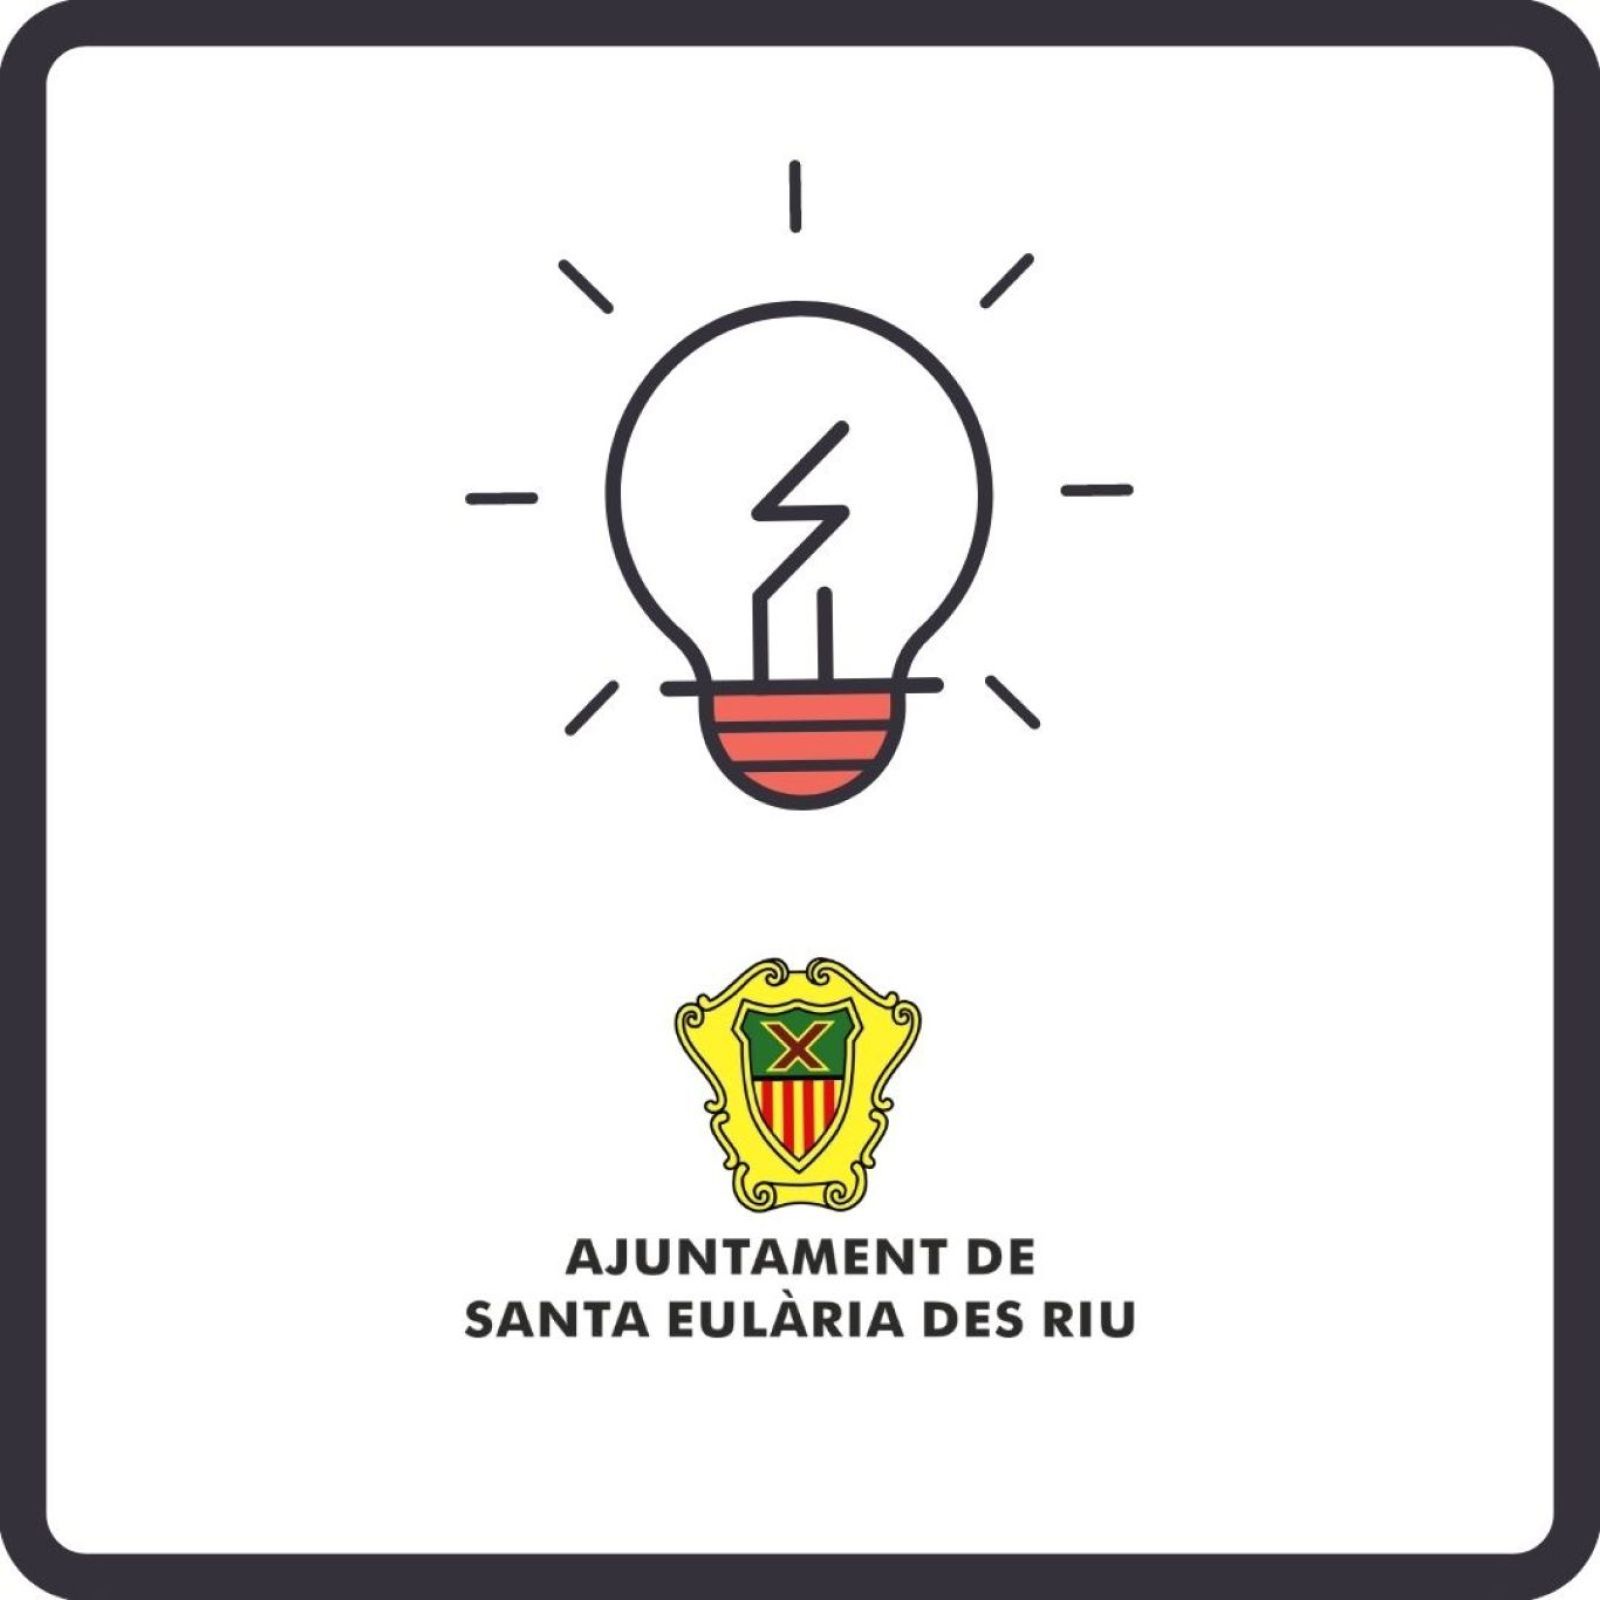 Corte temporal del suministro de energía eléctrica en diferentes zonas de Santa Eulària des Riu el día 15 de marzo